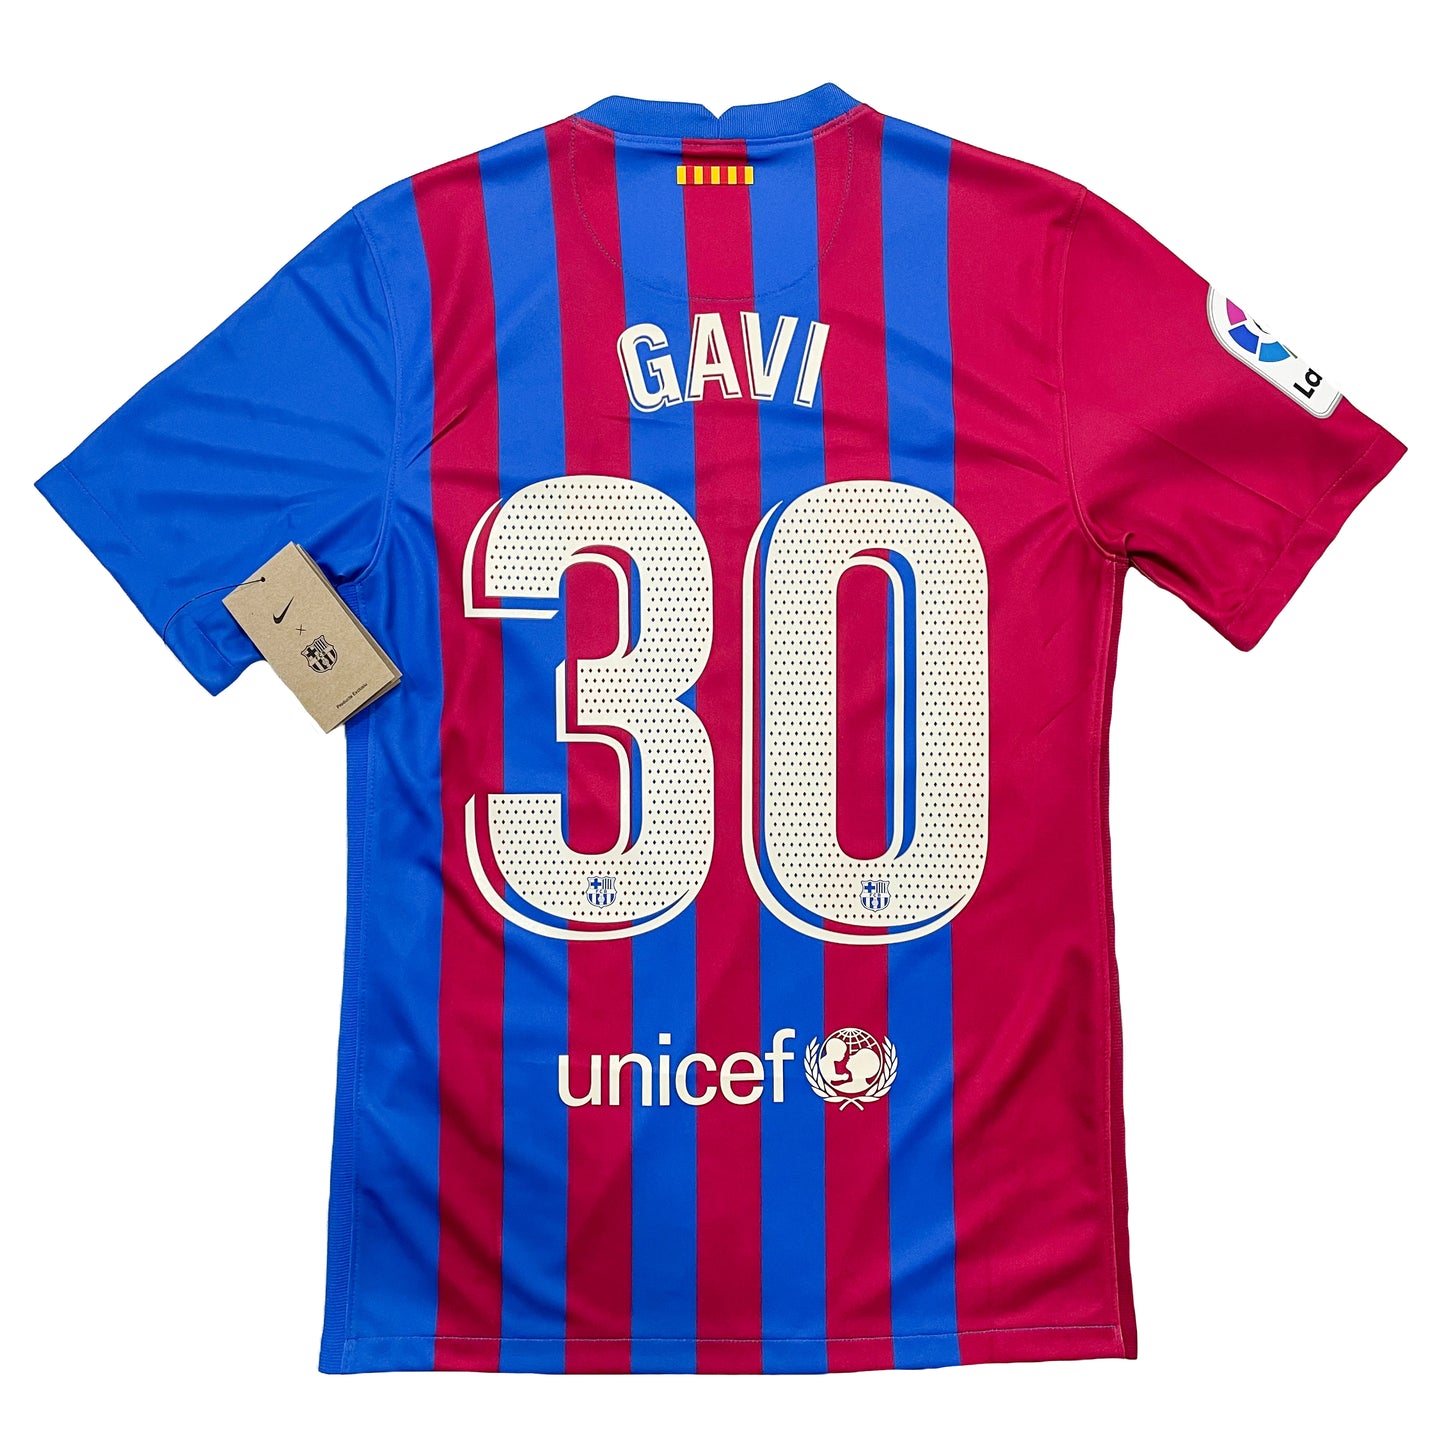 2021-2022 FC Barcelona home shirt #30 Gavi (S, M)